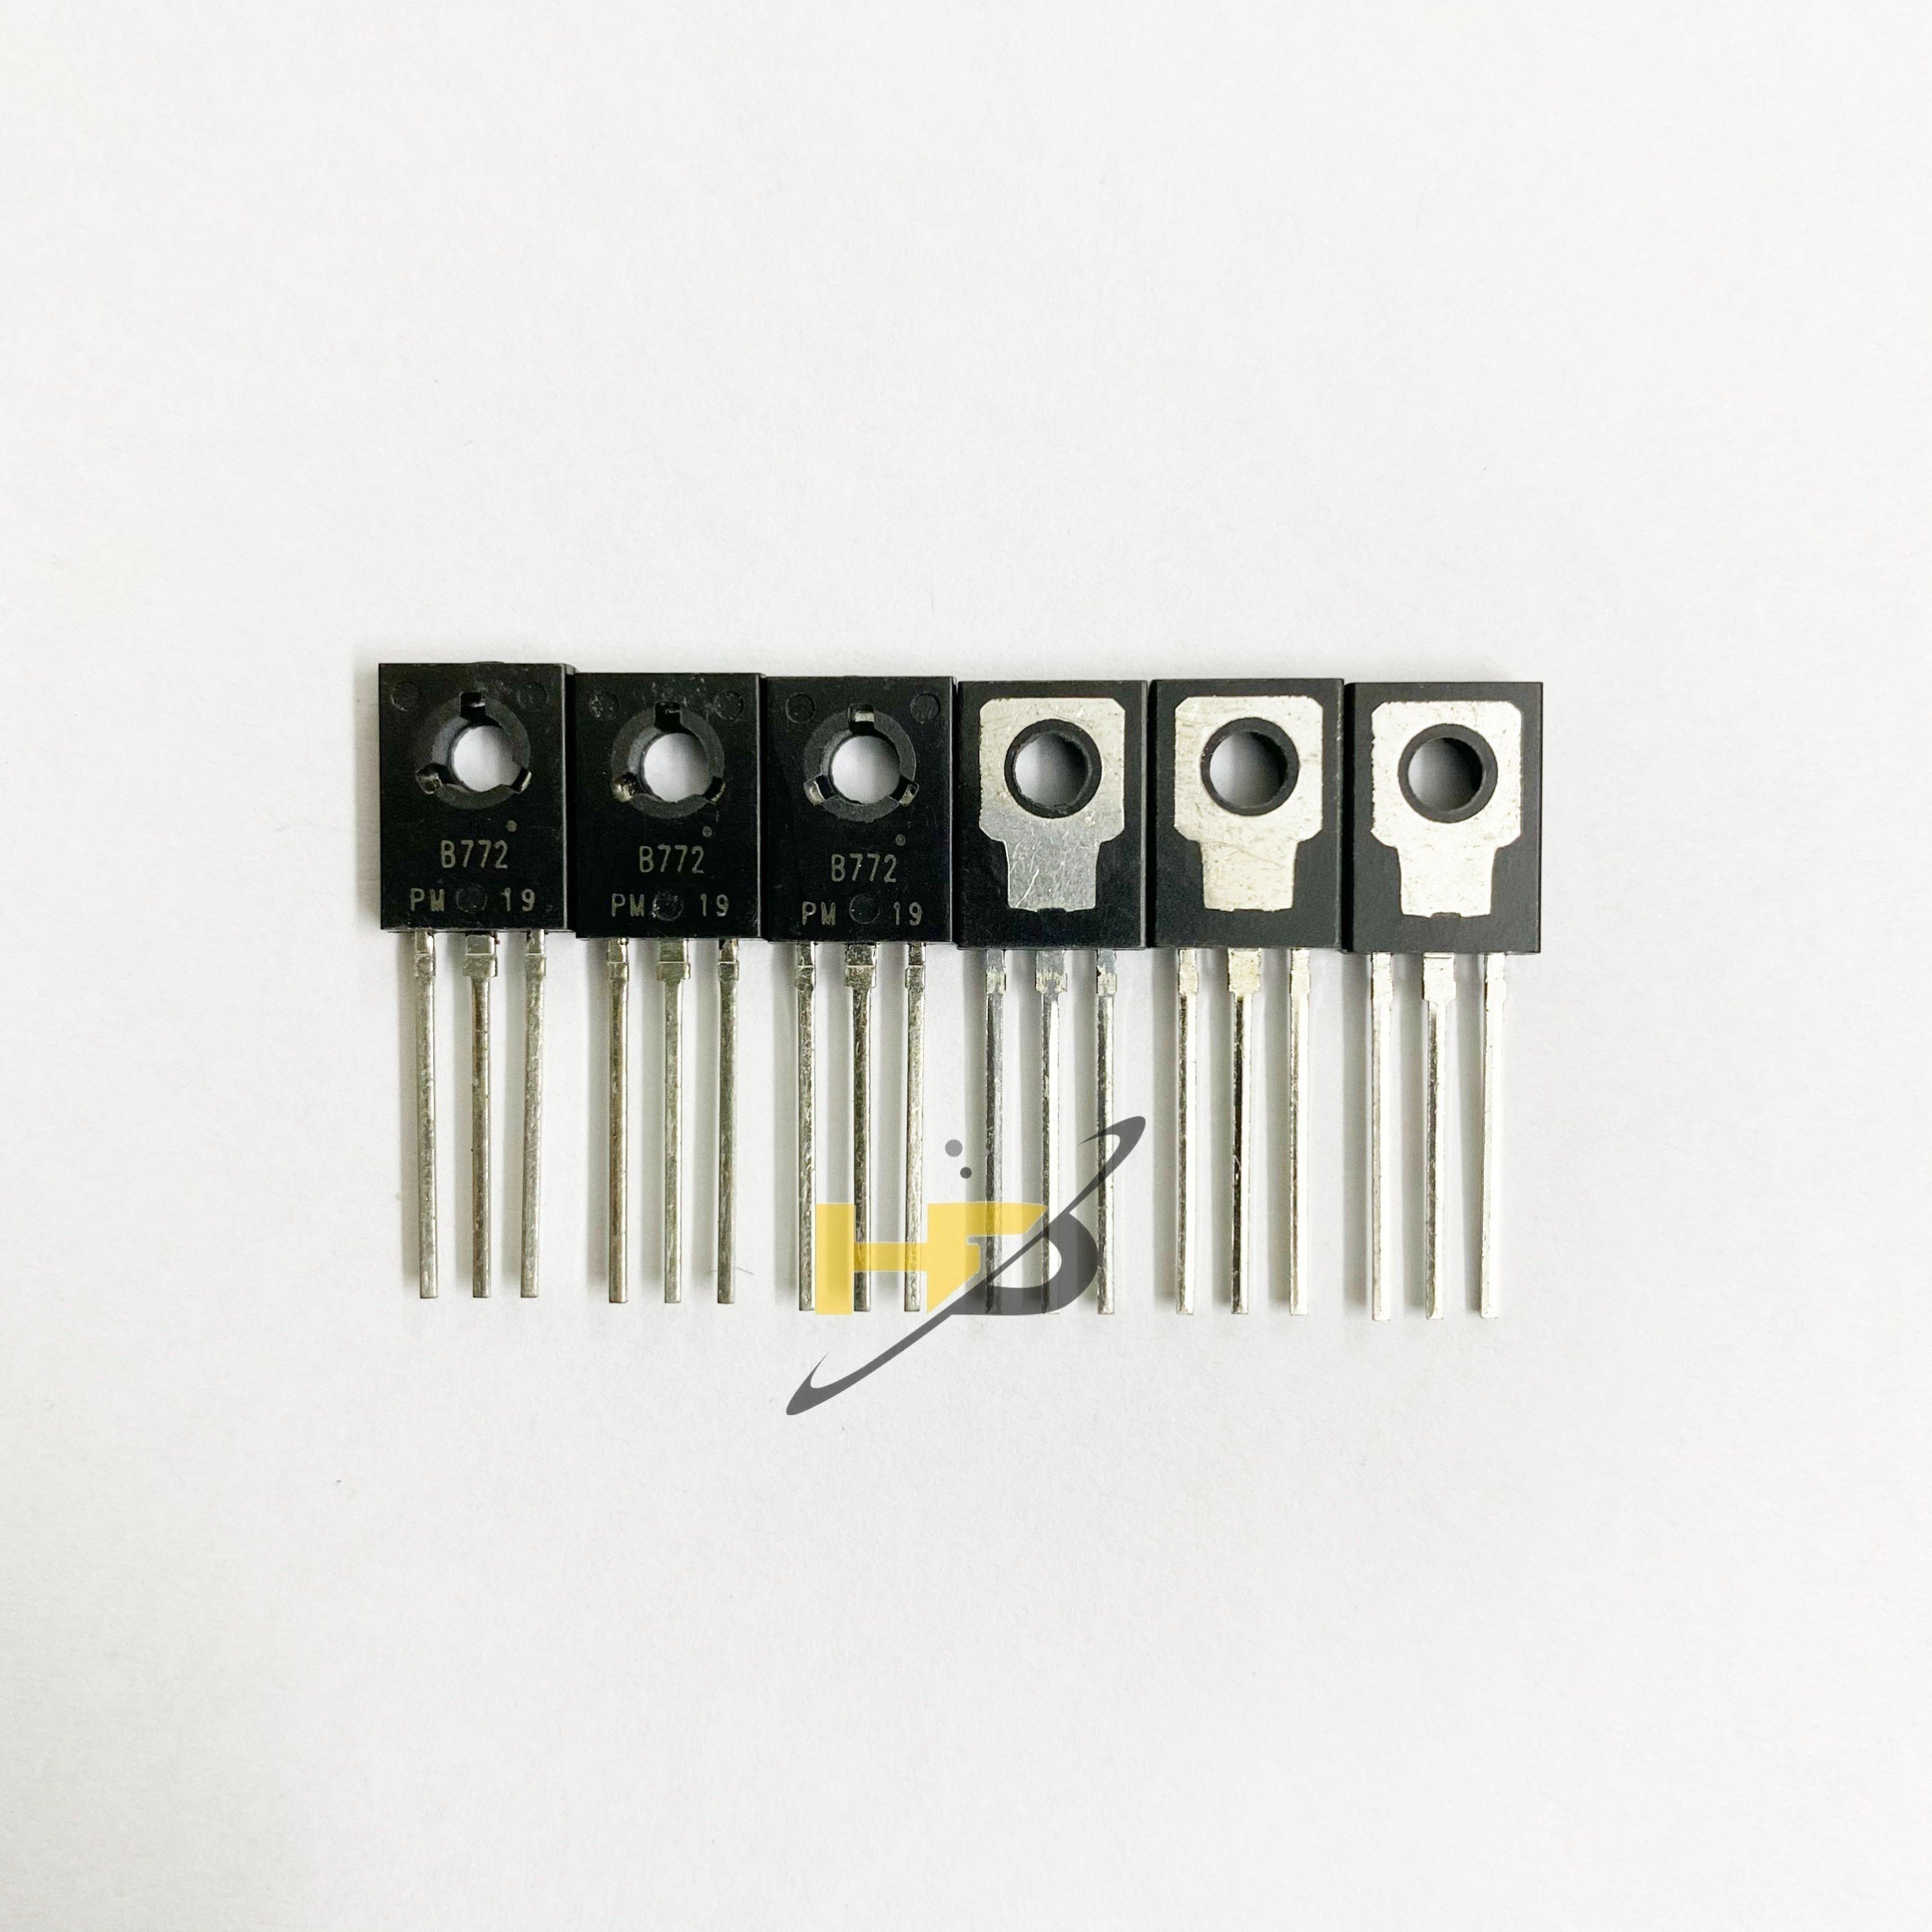 Transistor PNP B772 3A-30V Linh Kiện Bán Dẫn Chân Cắm Tốt ( Combo 5 Con )